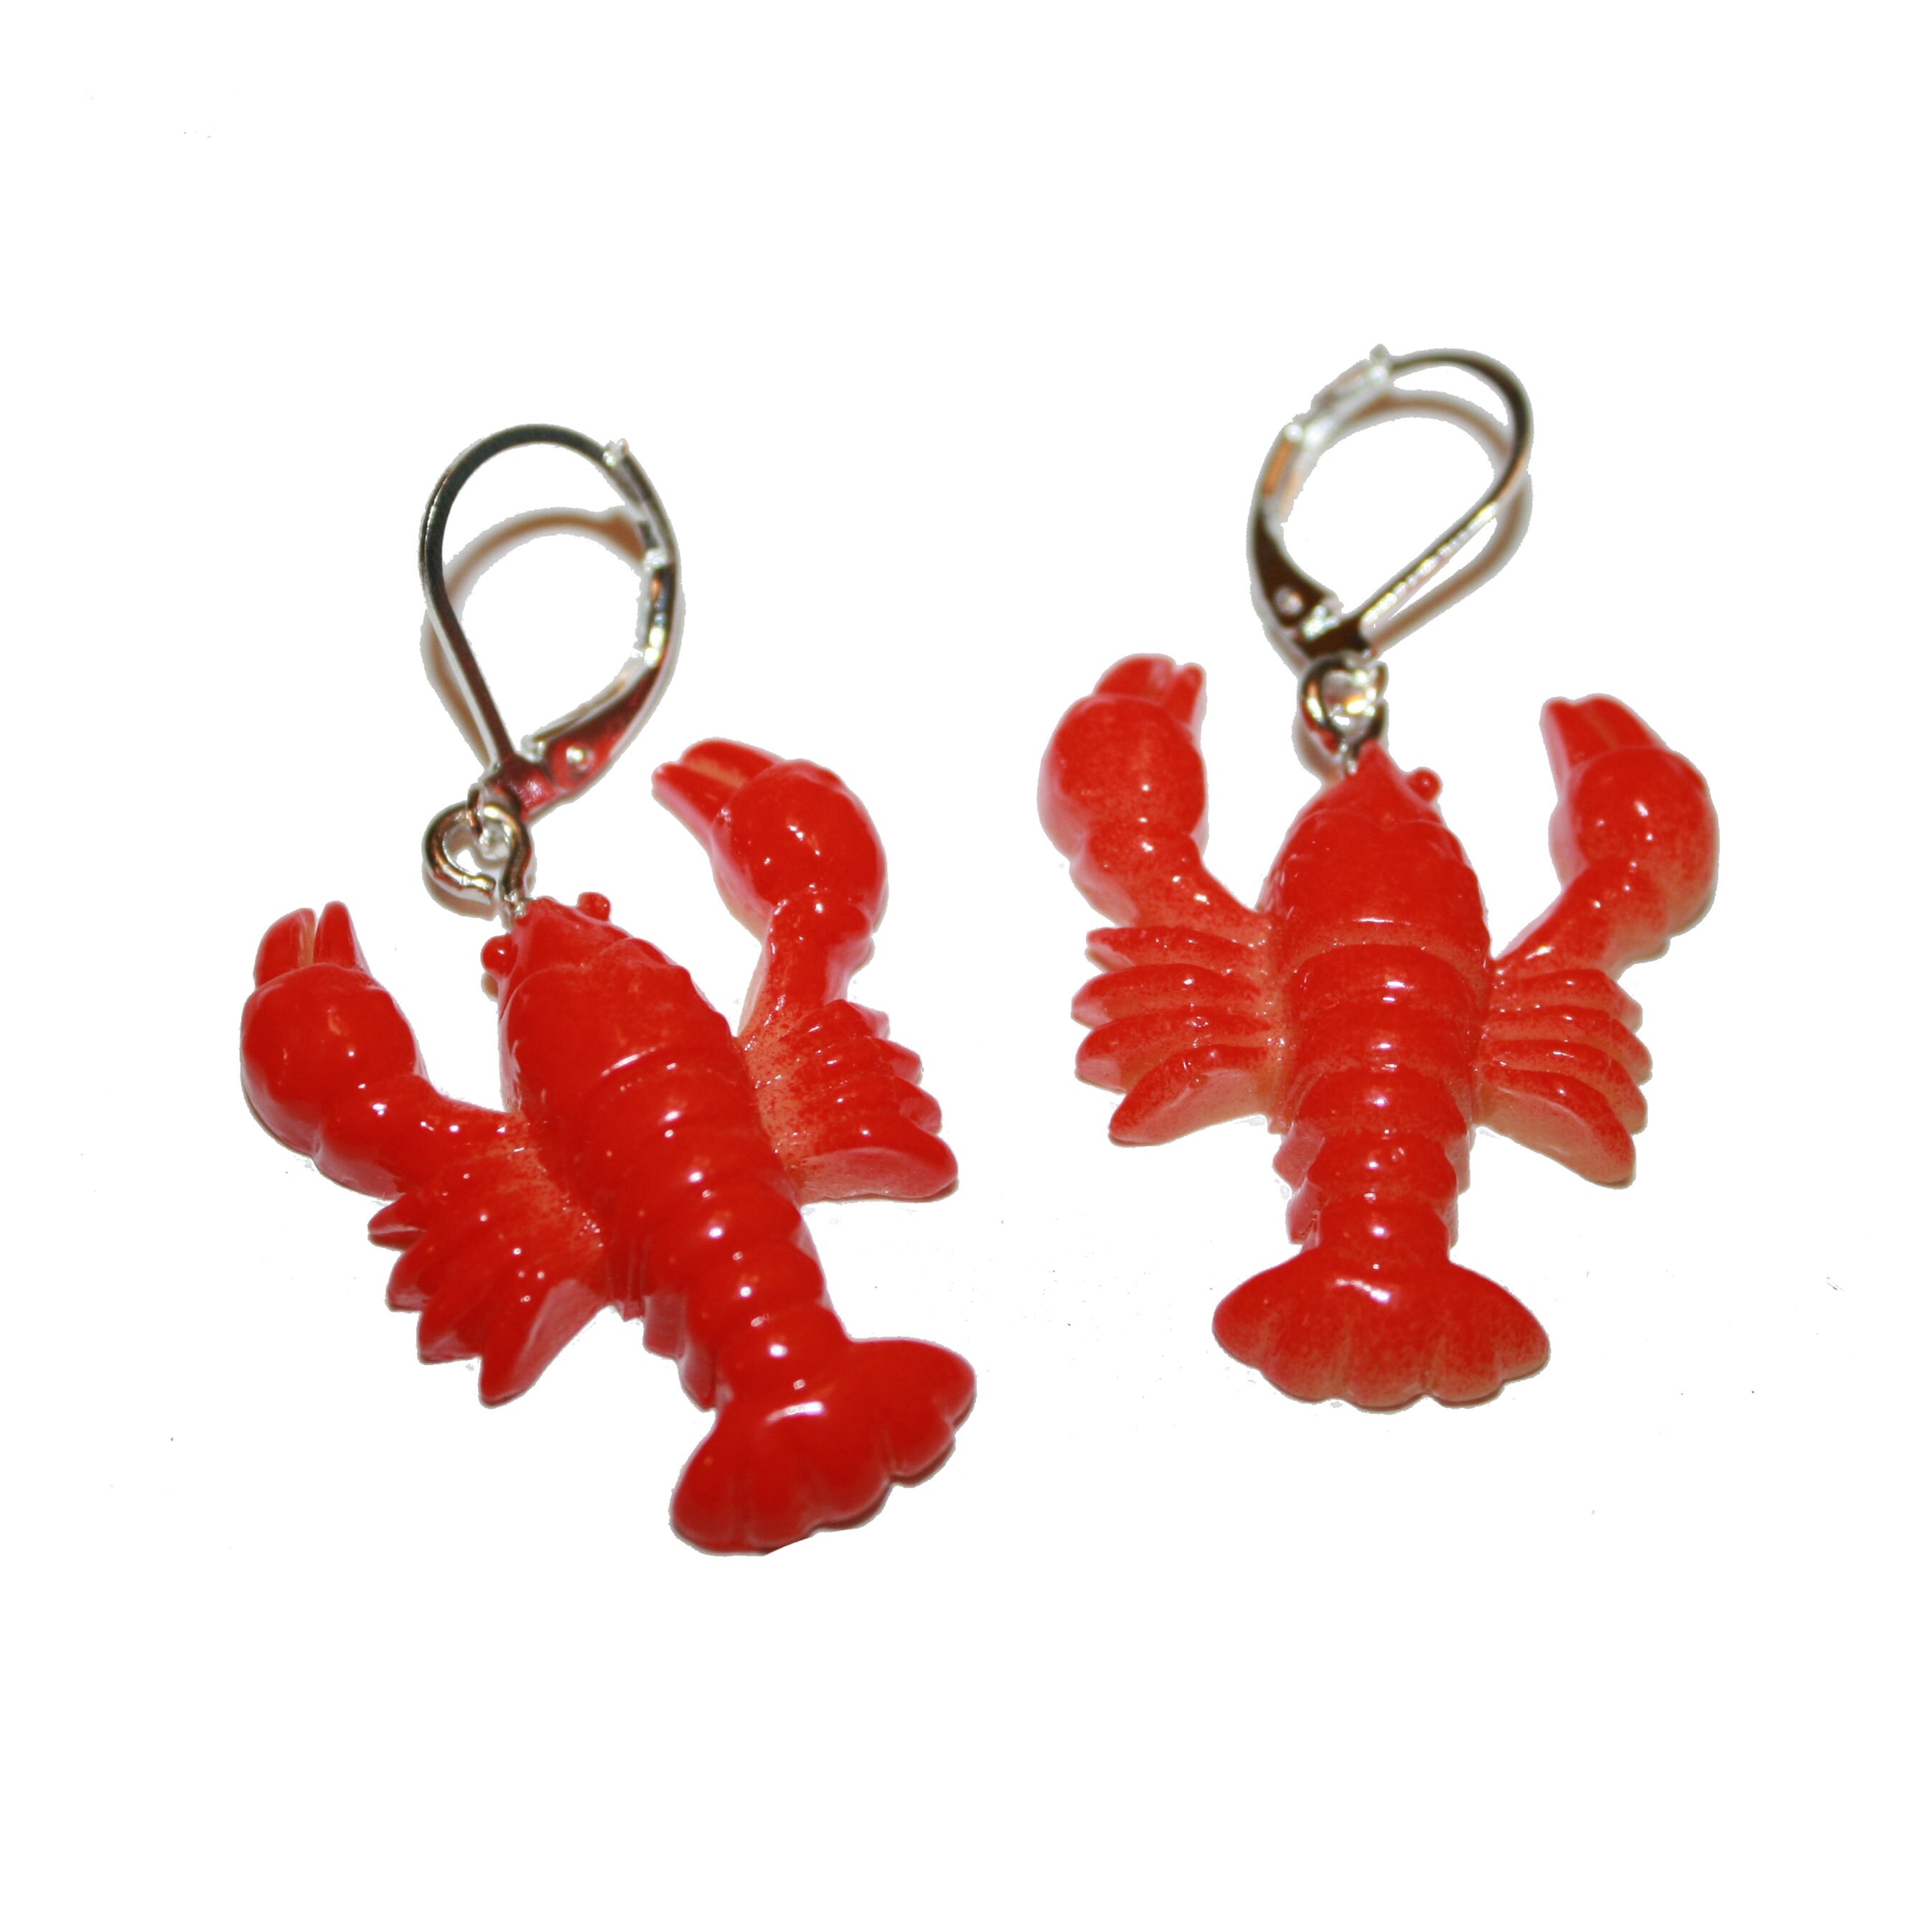 Red Lobster Earrings - Kitschy Red Lobster Earrings Seafood Ocean Mermaid Huge Big